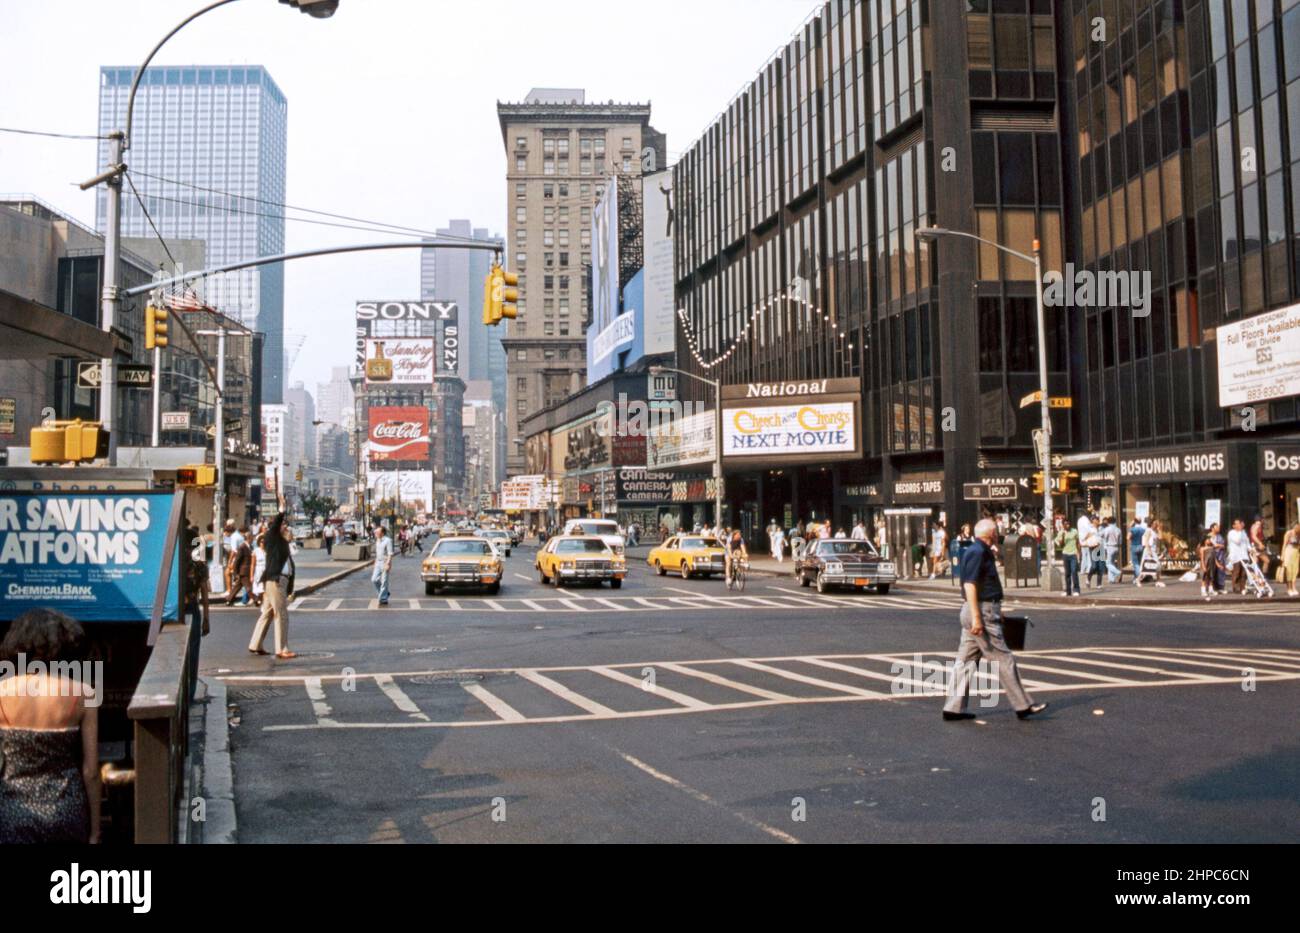 Times Square en 1980, mirando hacia el norte a lo largo de 7th Avenue en Broadway/West 44th Street, Nueva York, Estados Unidos. Una pantalla indica que la última película que se muestra es 'Cheech and Chong's Next Movie'. Times Square es una importante intersección comercial, destino turístico, zona de entretenimiento en la parte de Midtown Manhattan de Nueva York, en el cruce de Broadway y la Séptima Avenida. Brillantemente iluminado por numerosos carteles y anuncios, se extiende desde las calles West 42nd hasta West 47th, y a veces se conoce como “The Crossroads of the World” (La encrucijada del mundo), una fotografía vintage de 1980s. Foto de stock